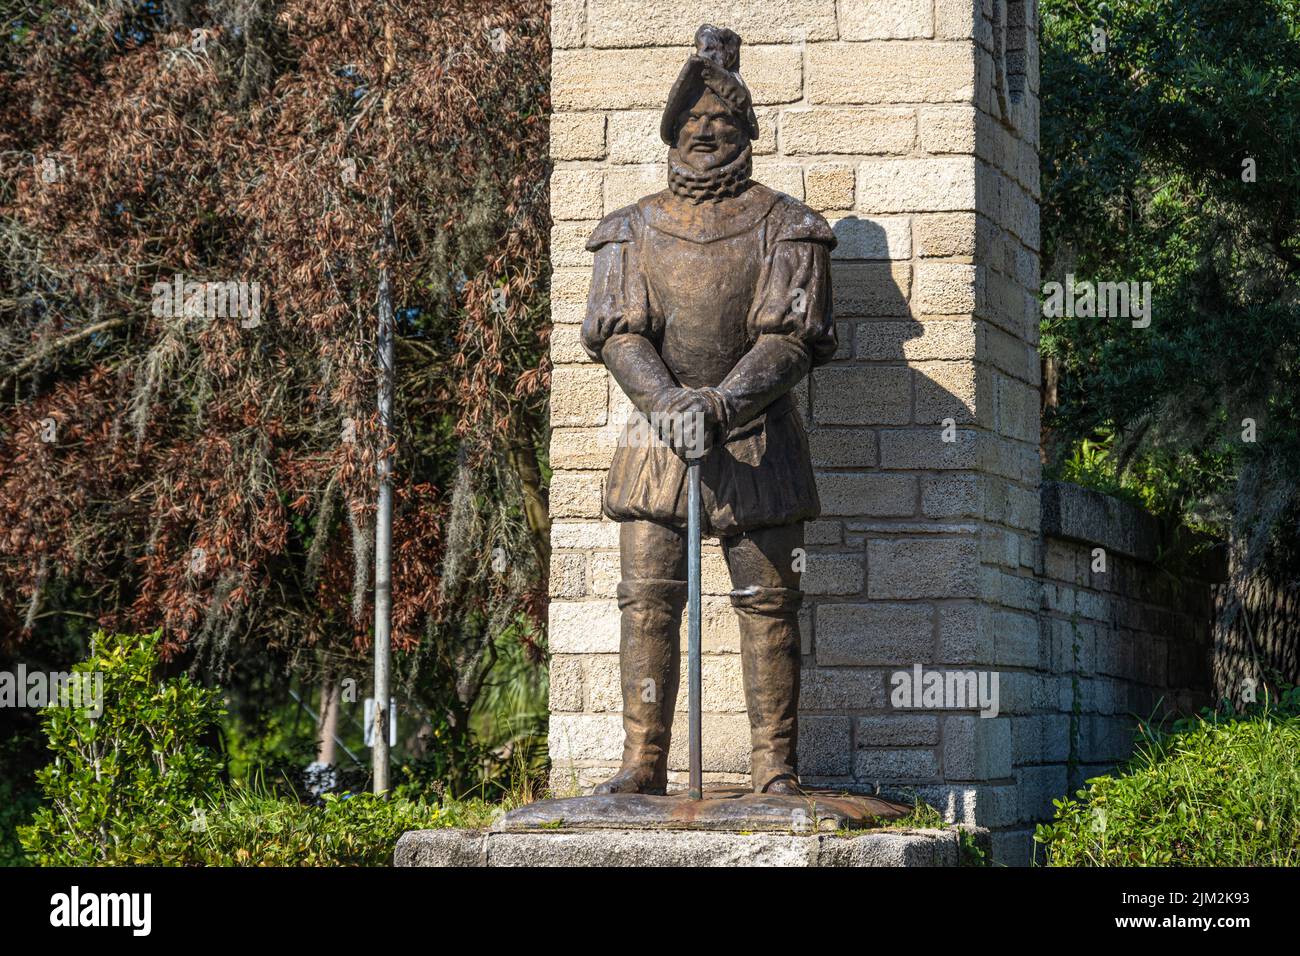 Statua di Don Pedro Menendez de Aviles, ammiraglio ed esploratore spagnolo che fondò Sant'Agostino, all'ingresso della città di Sant'Agostino. Foto Stock